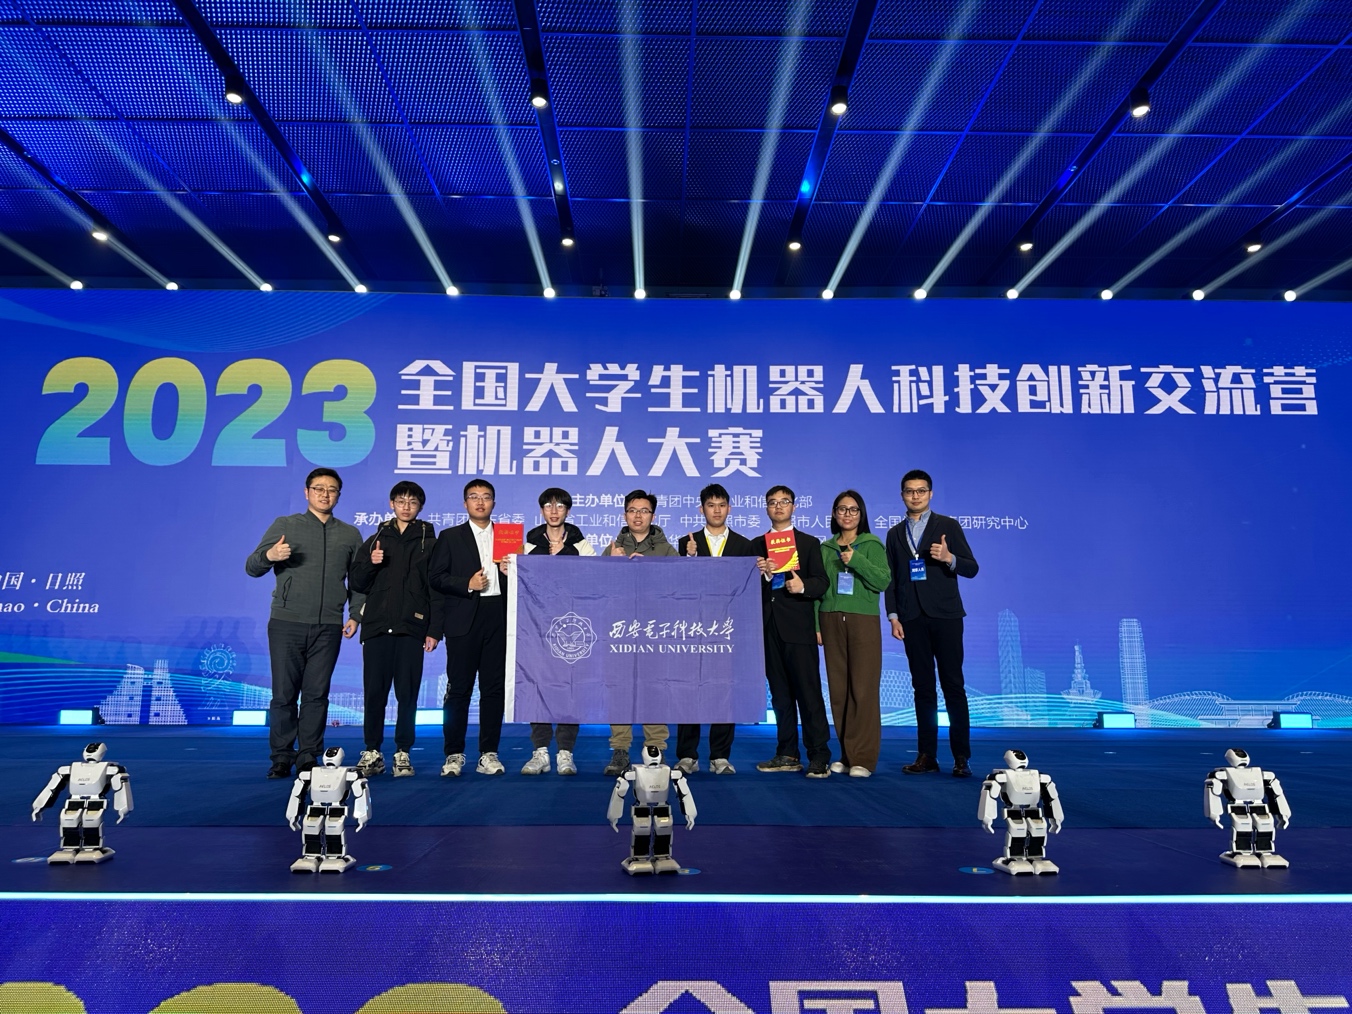 我院在2023年全国大学生机器人大赛中勇夺全国特等奖